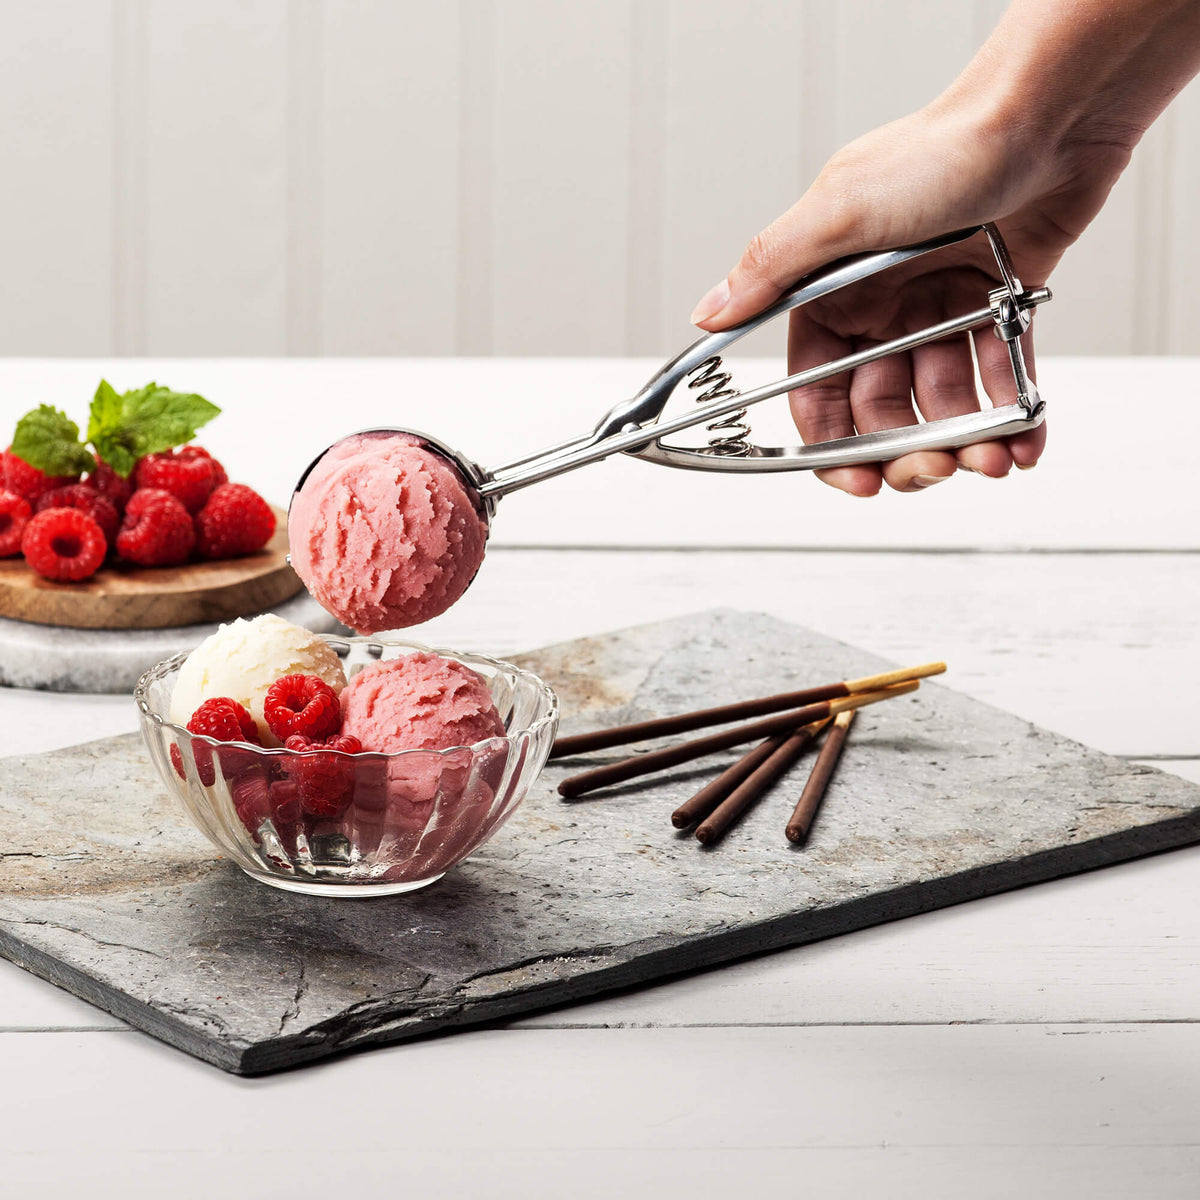 Zeal - Ice cream scoop